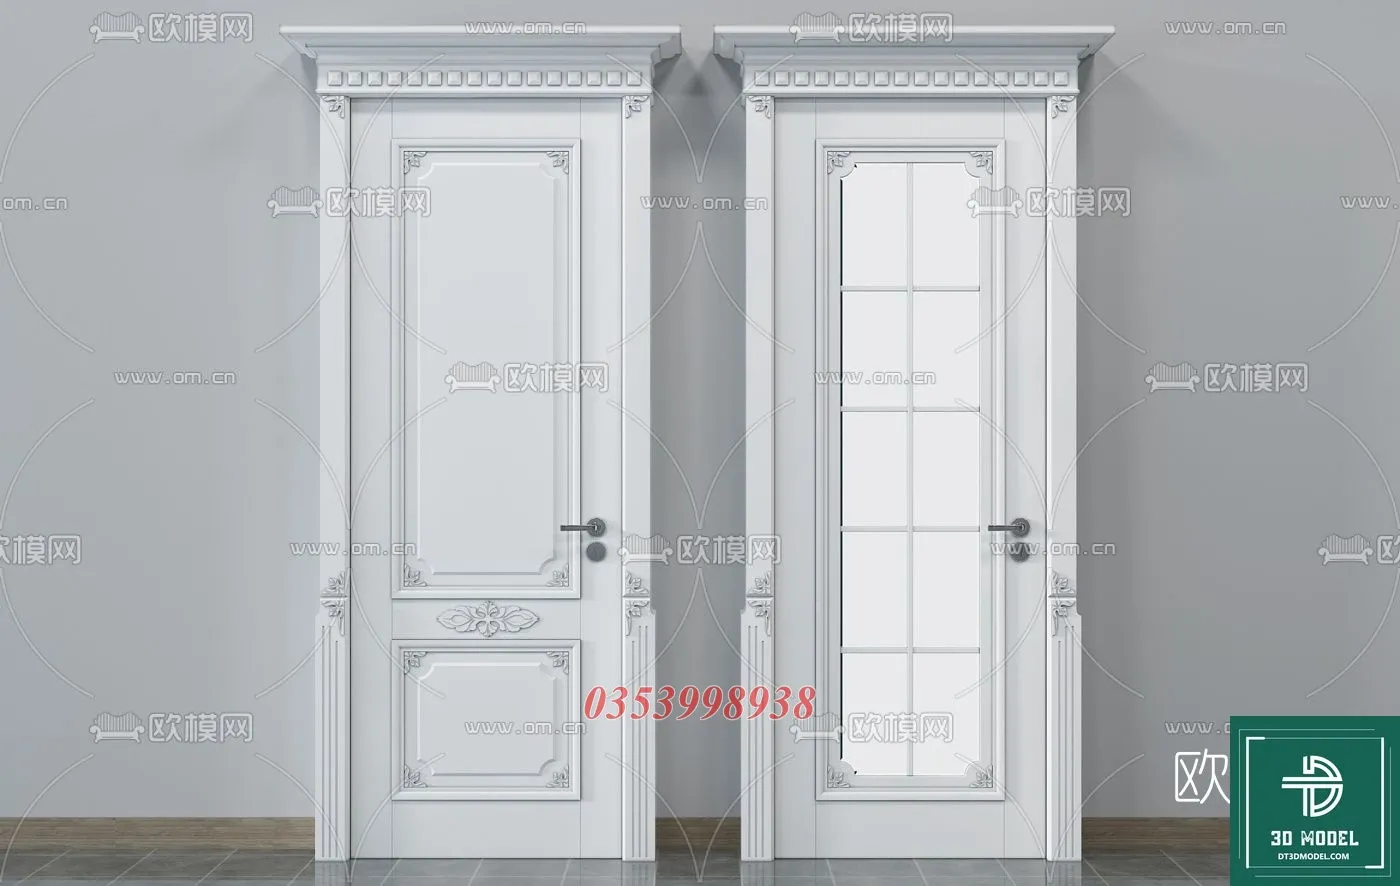 CLASSIC DOOR – 3dsmax MODELS – 030